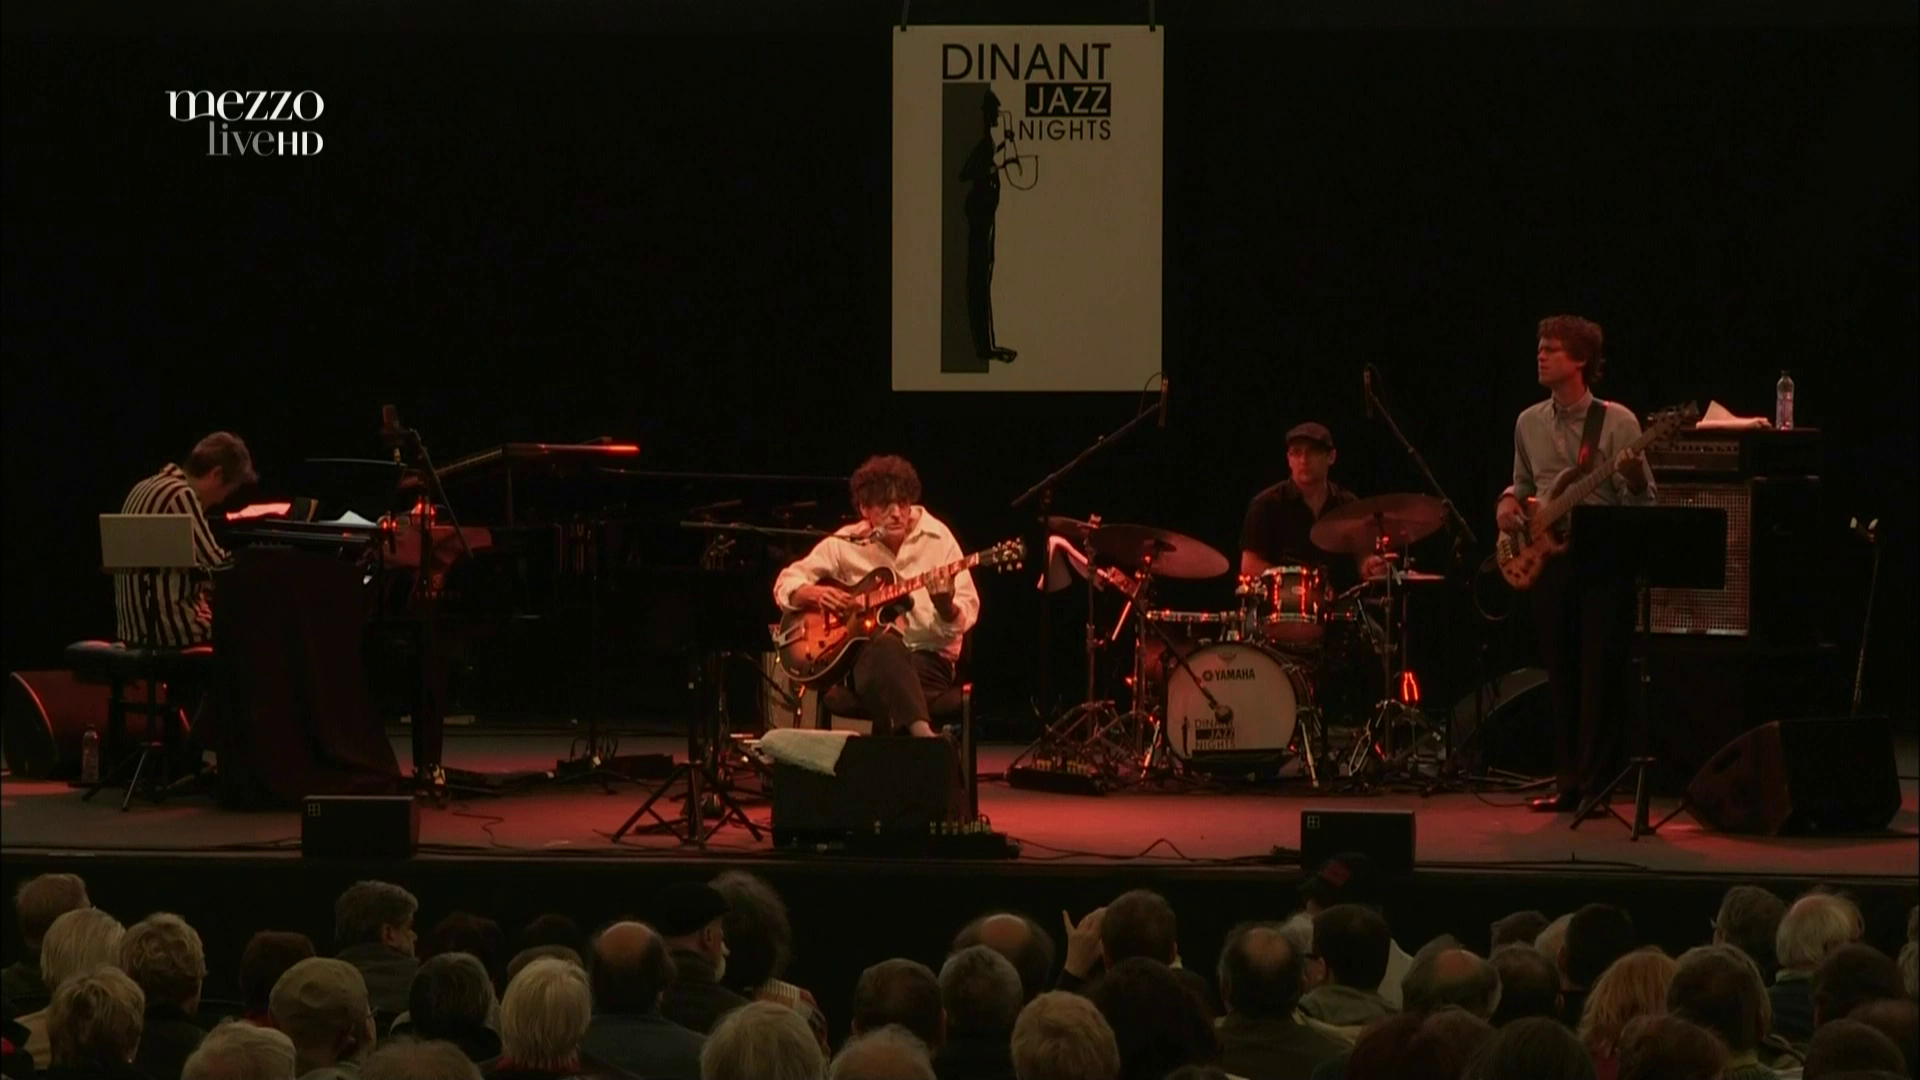 2011 Vinicius Cantuaria Quartet - Dinant Jazz Nights [HDTV 1080p] 2